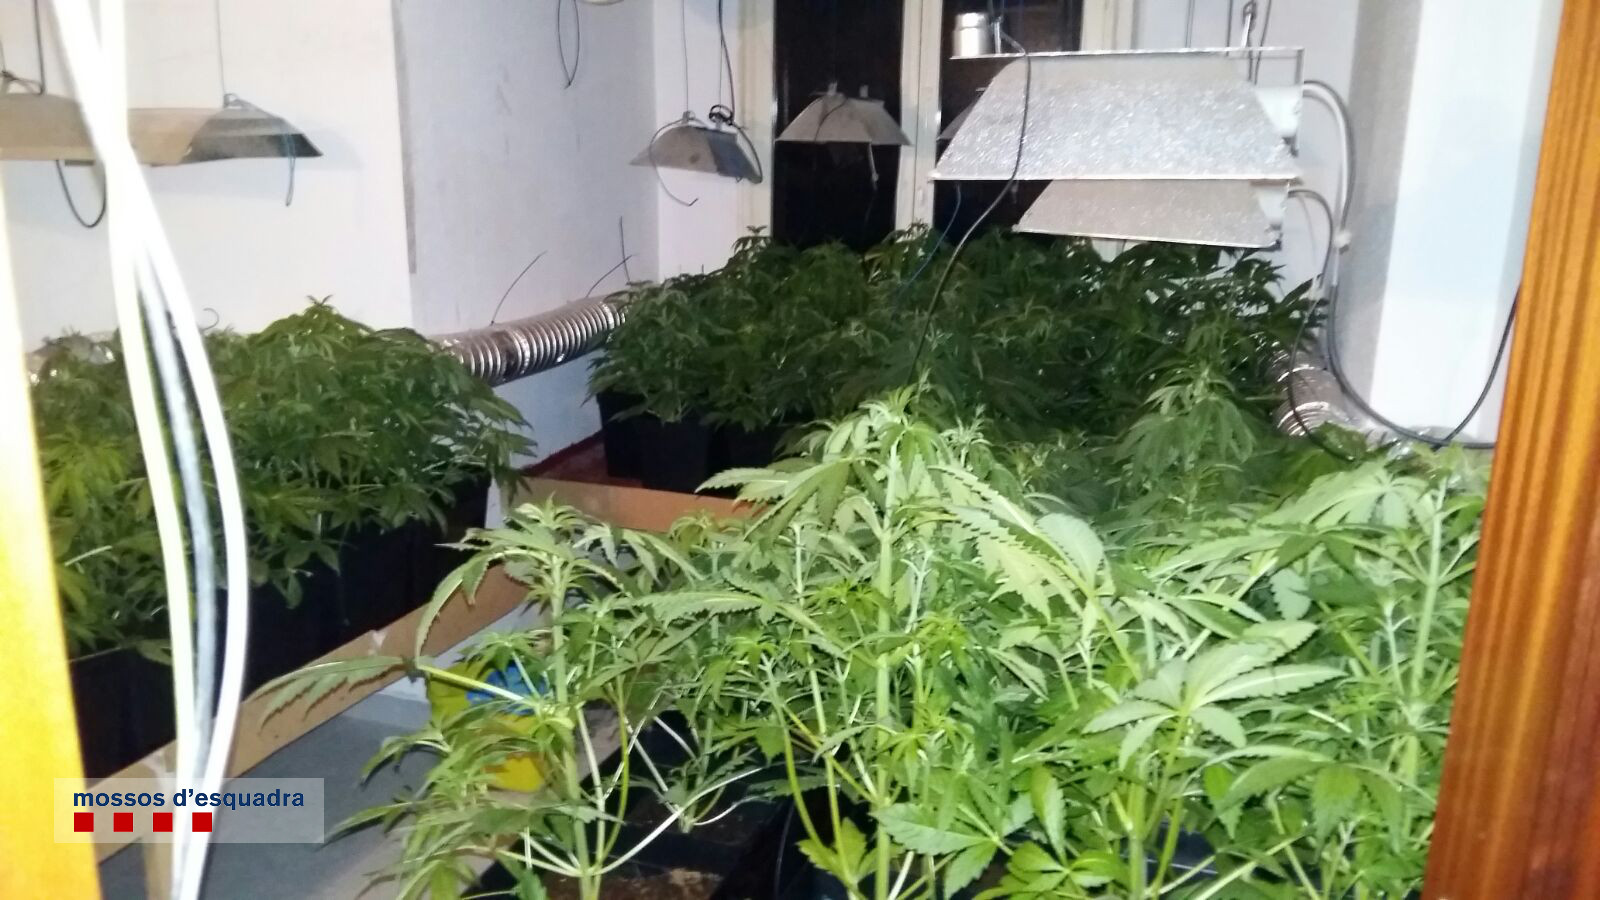 Els Mossos d'Esquadra van trobar 85 plantes de marihuana